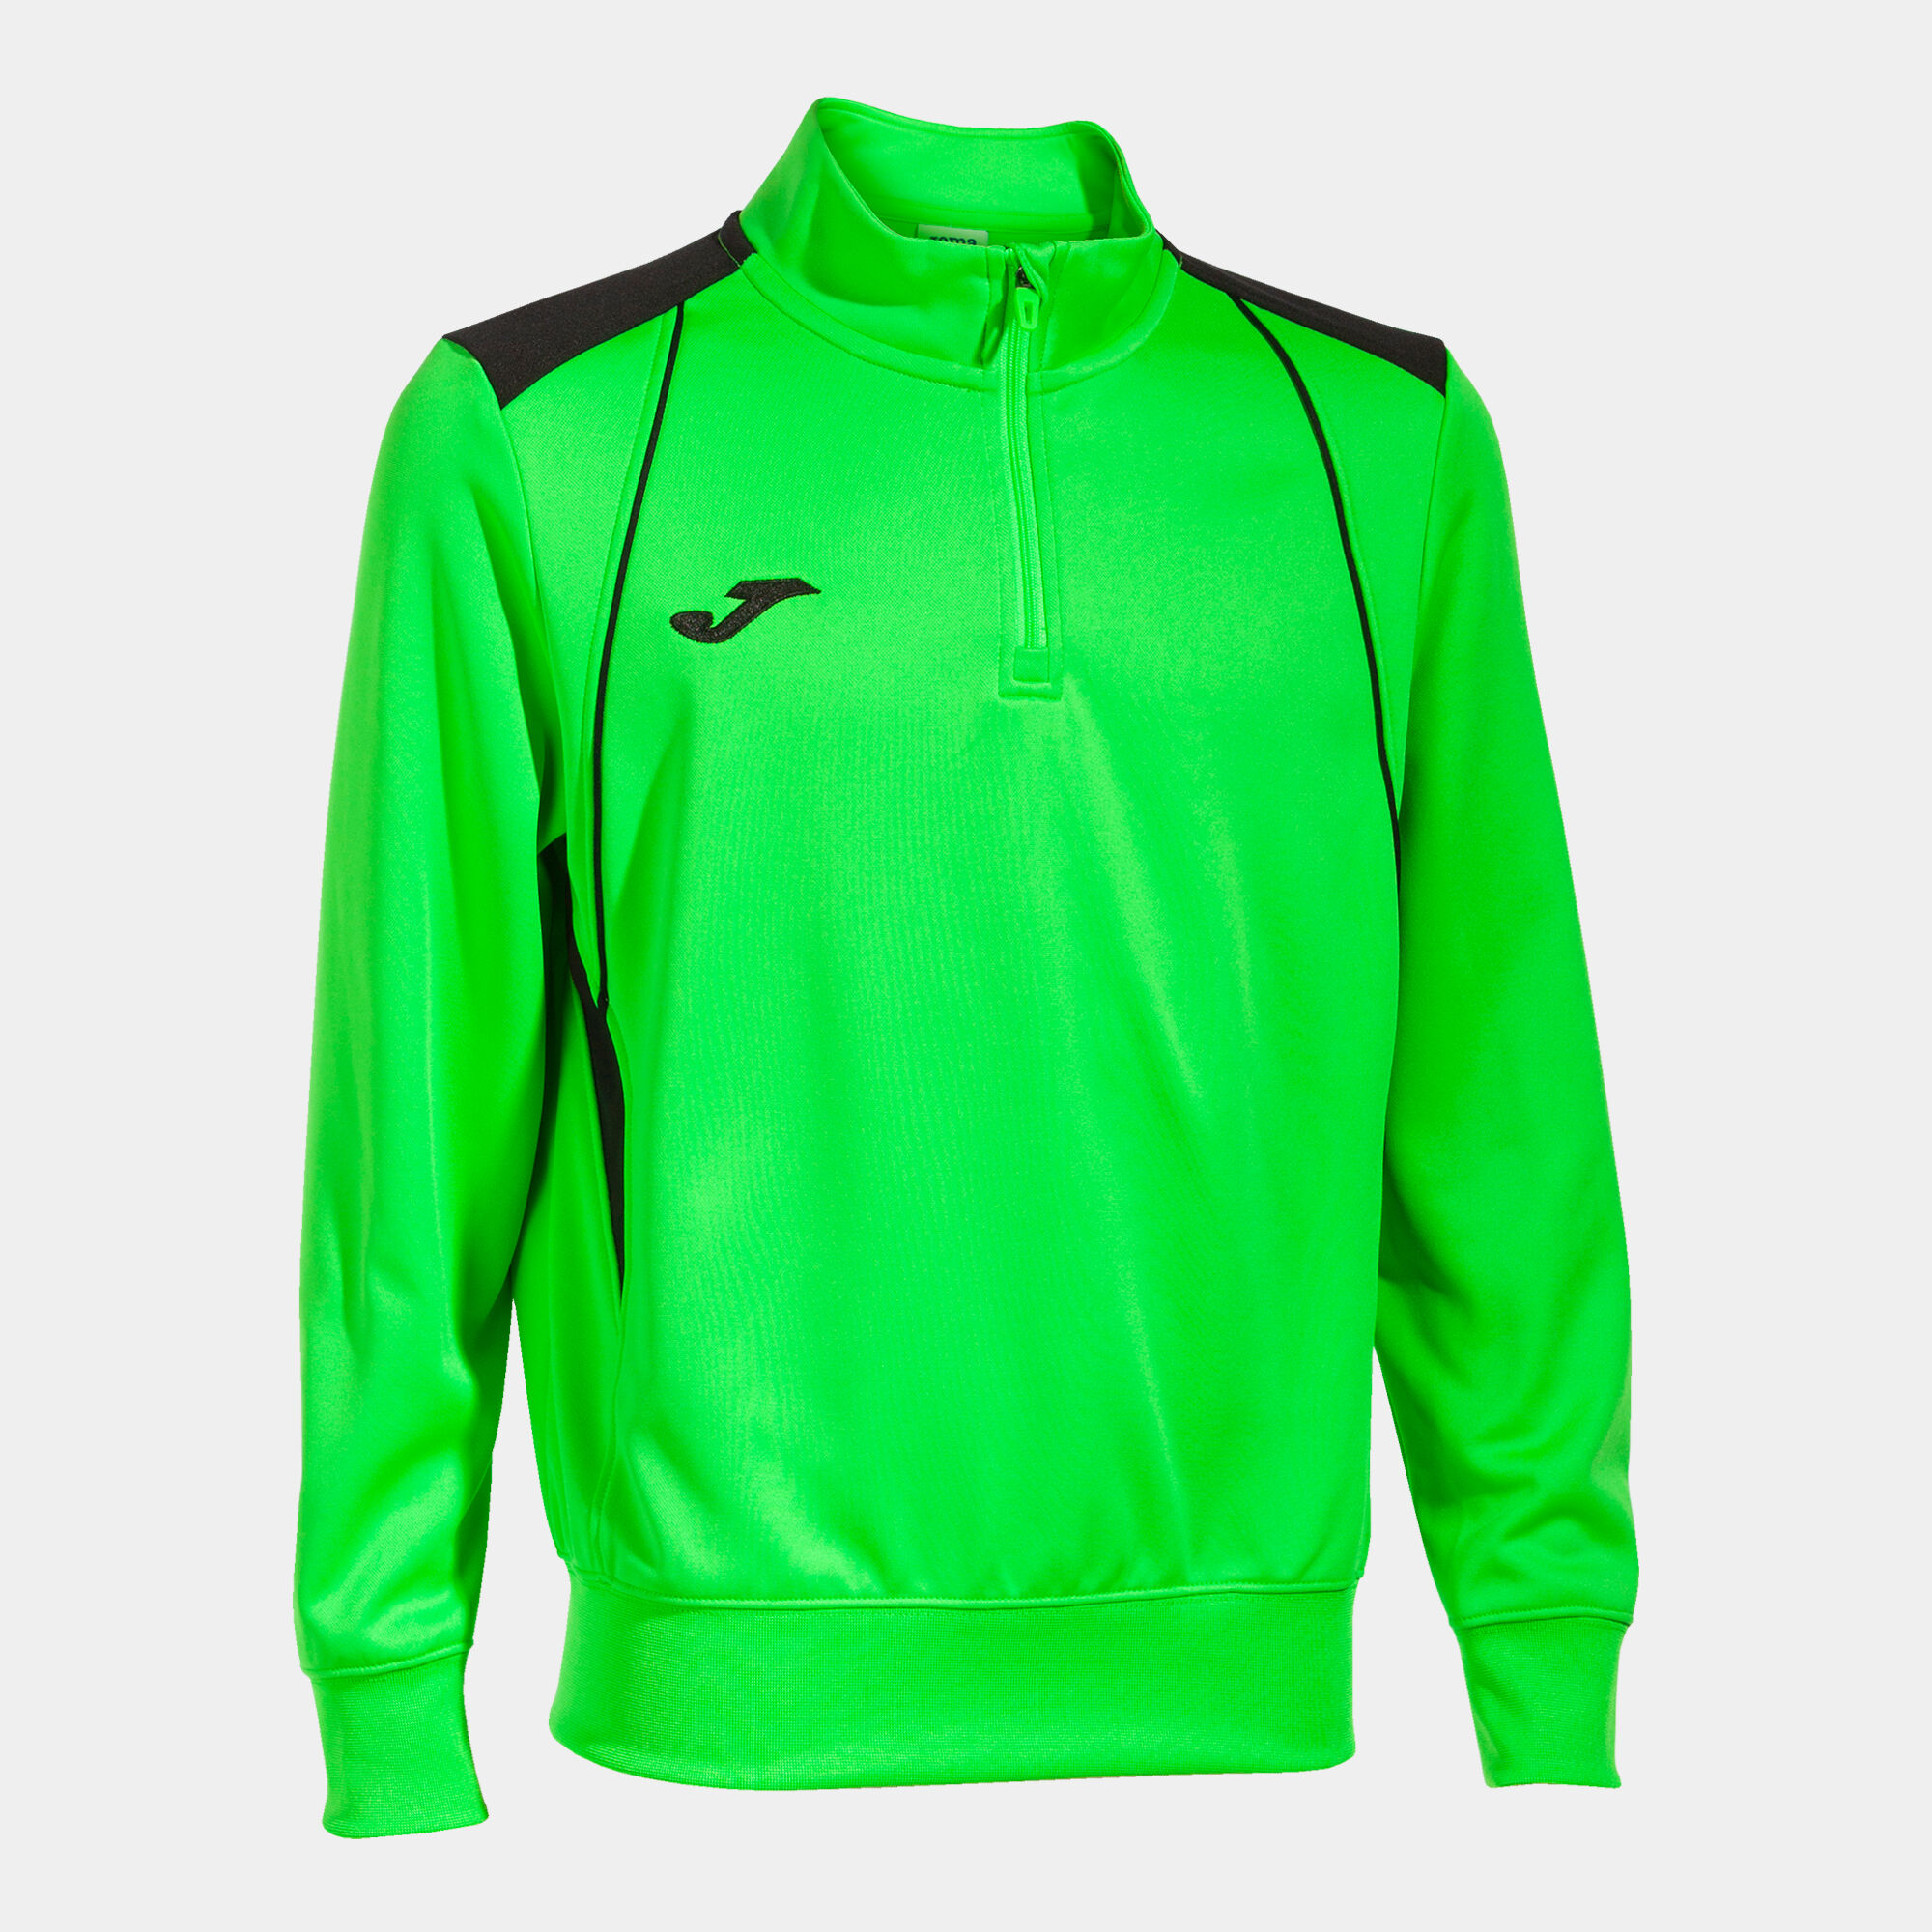 Bluza mężczyźni Championship VII fluorescencyjny zielony czarny